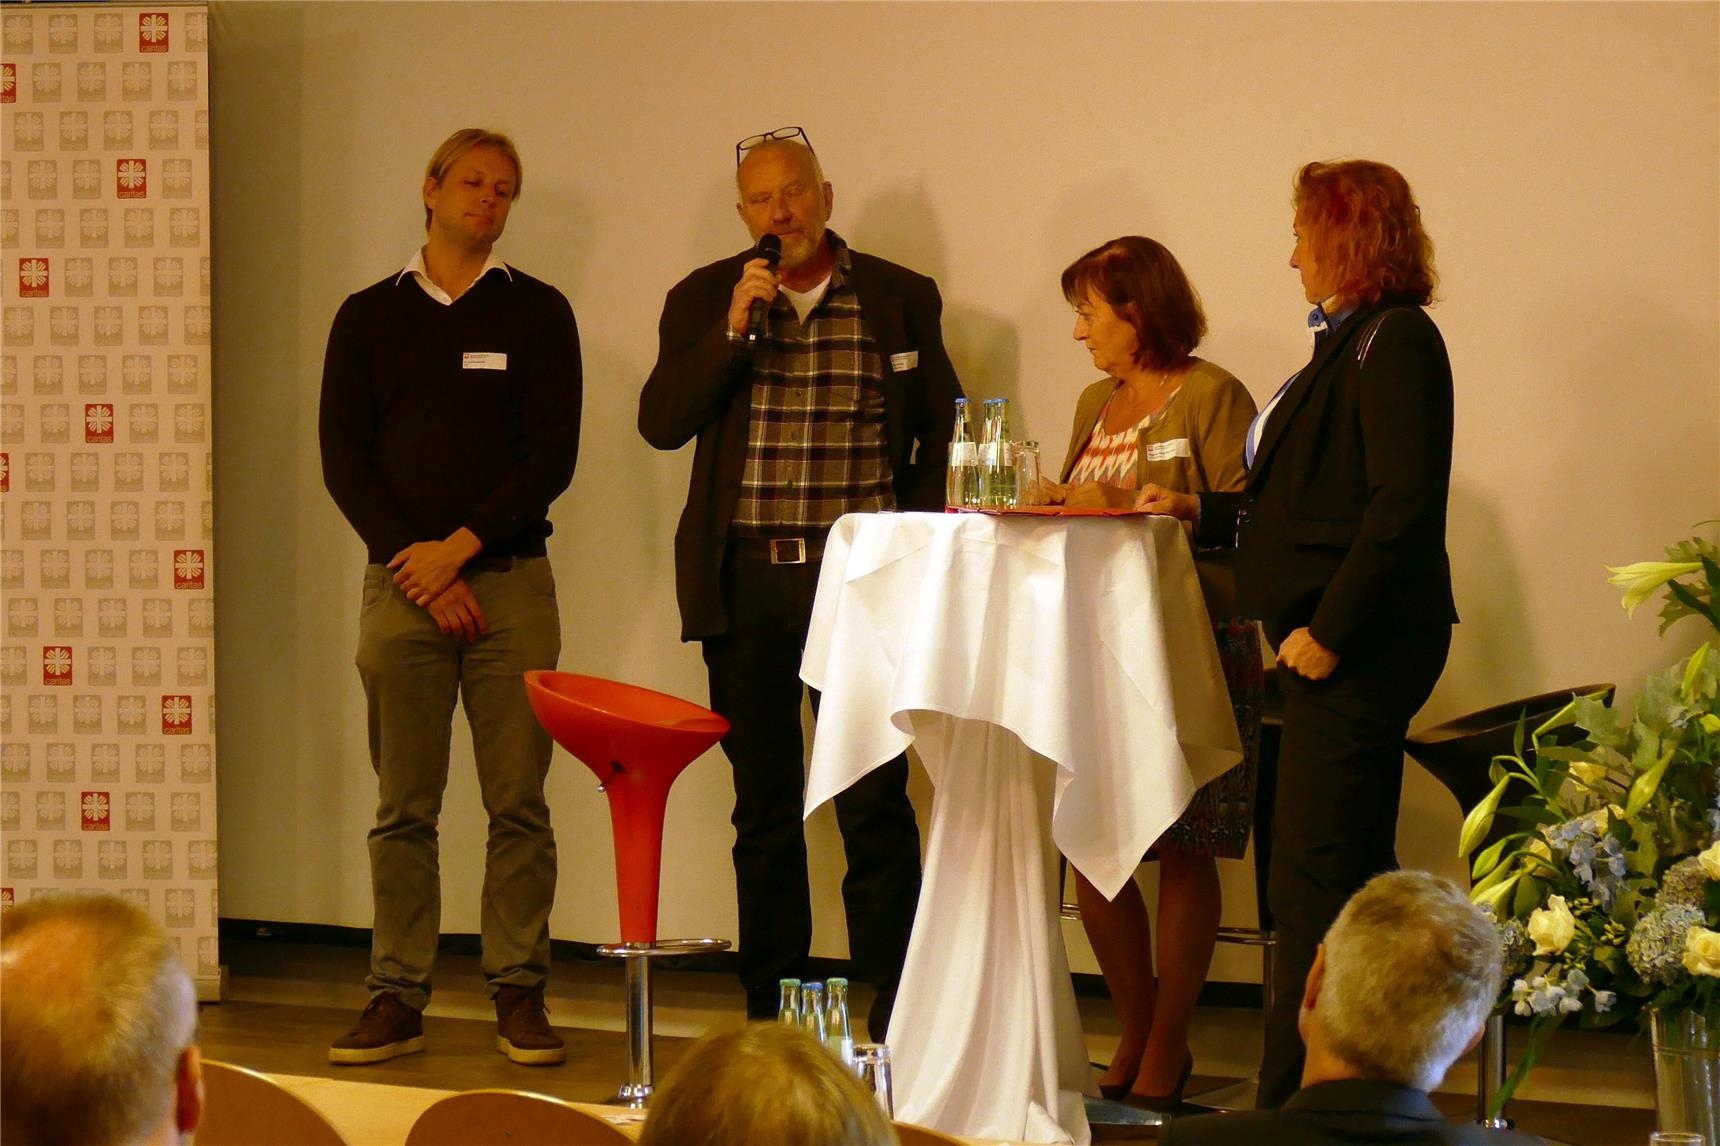 Diskussionsrunde an Stehtisch auf Podium (DiCV Aachen)